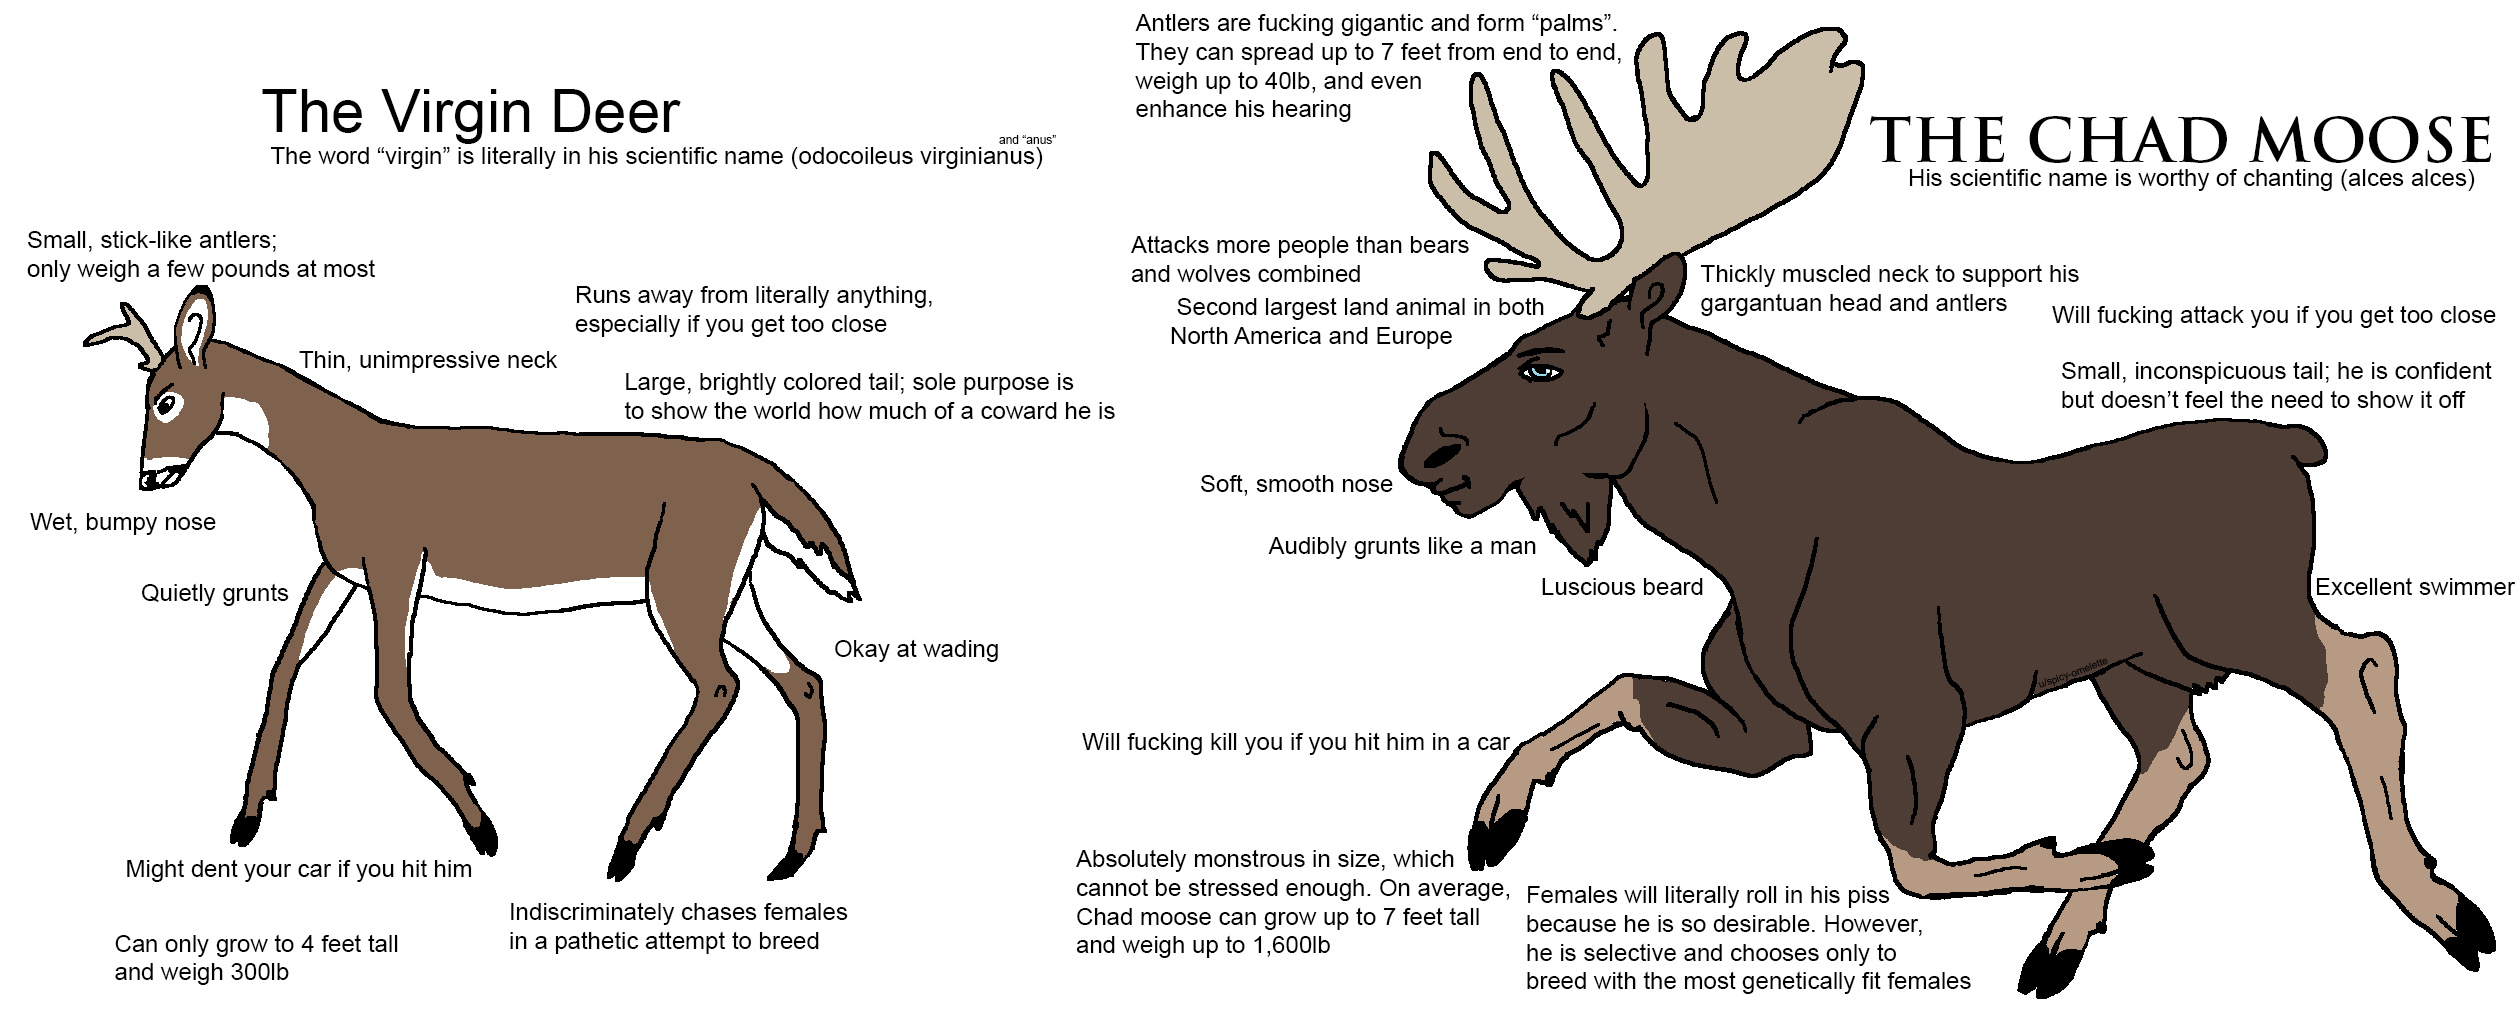 Virgin deer VS Chad moose.